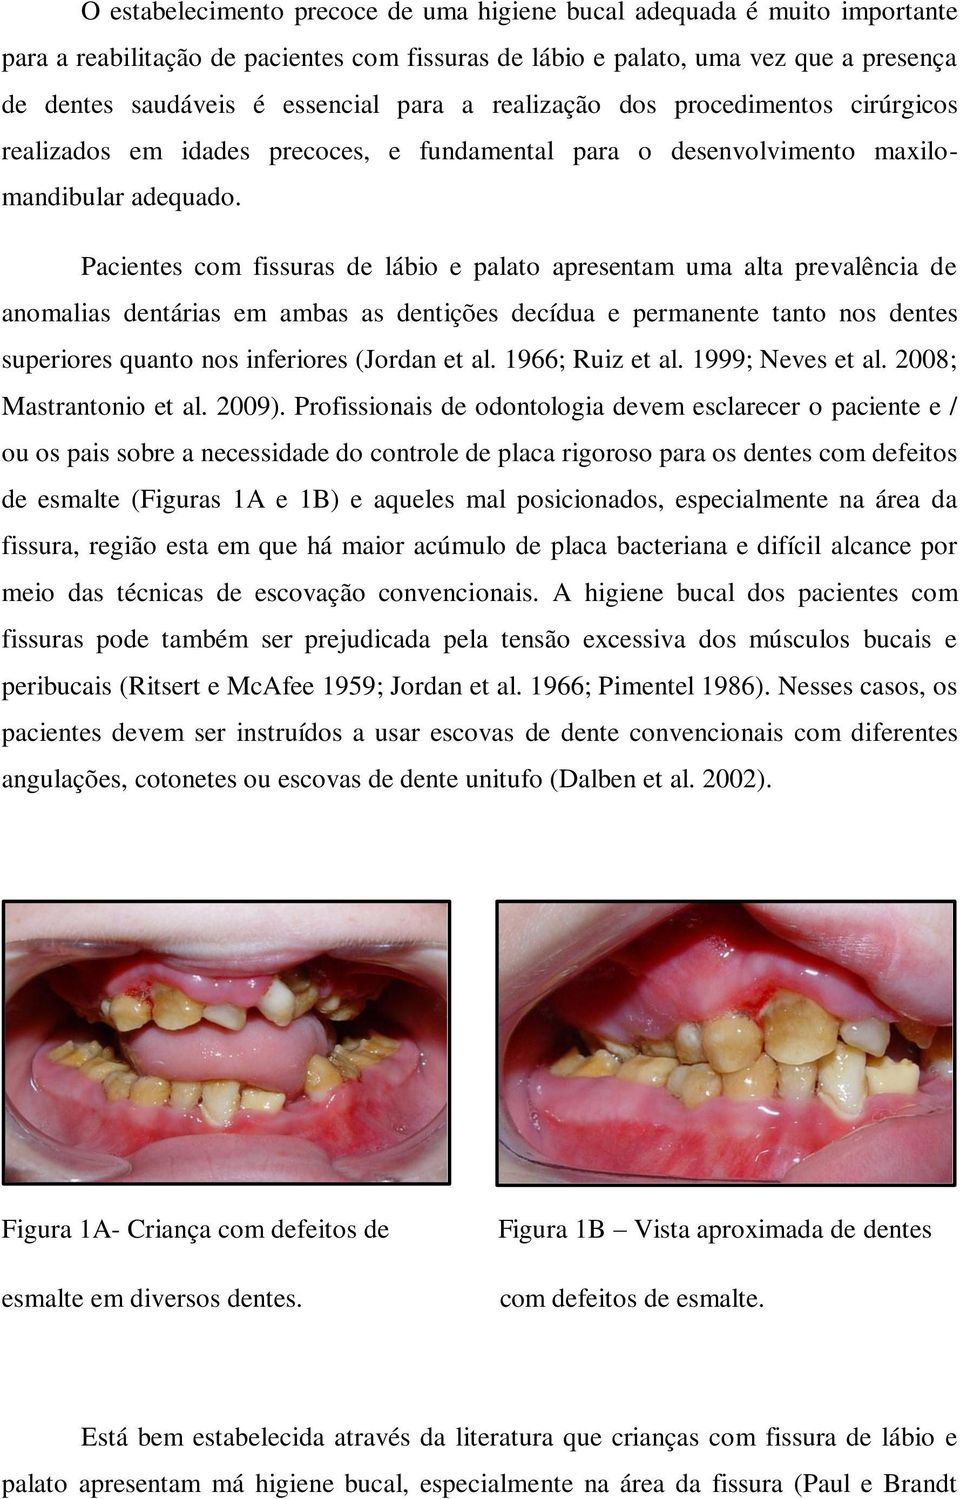 Pacientes com fissuras de lábio e palato apresentam uma alta prevalência de anomalias dentárias em ambas as dentições decídua e permanente tanto nos dentes superiores quanto nos inferiores (Jordan et